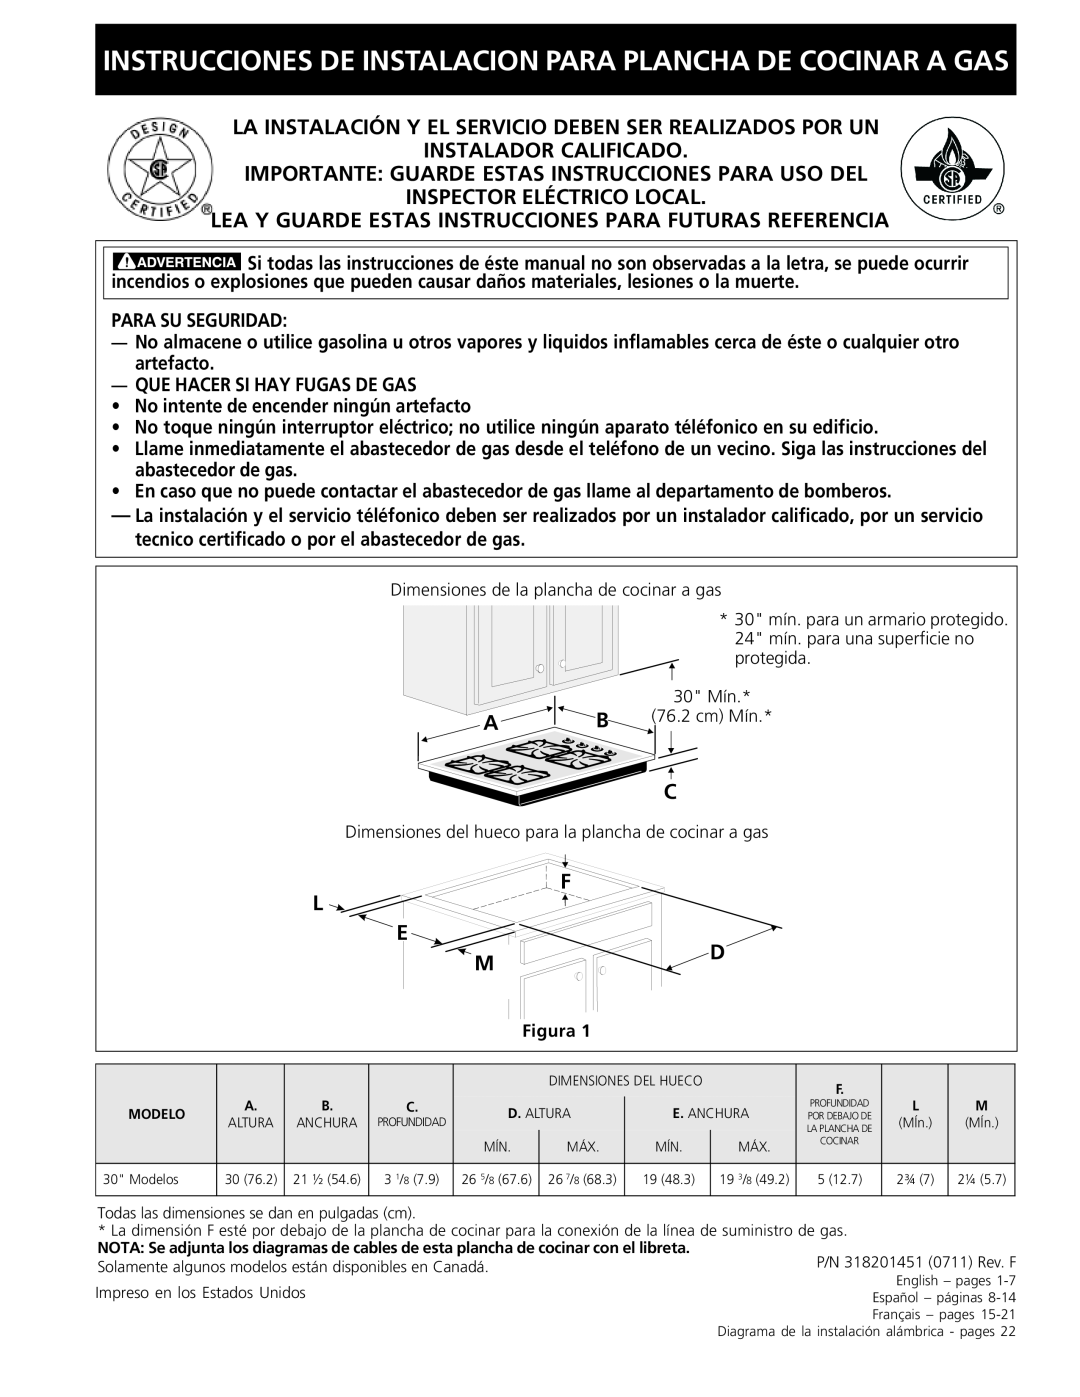 Frigidaire 318201451 dimensions Instrucciones De Instalacion Para Plancha De Cocinar A Gas, Instalador Calificado 